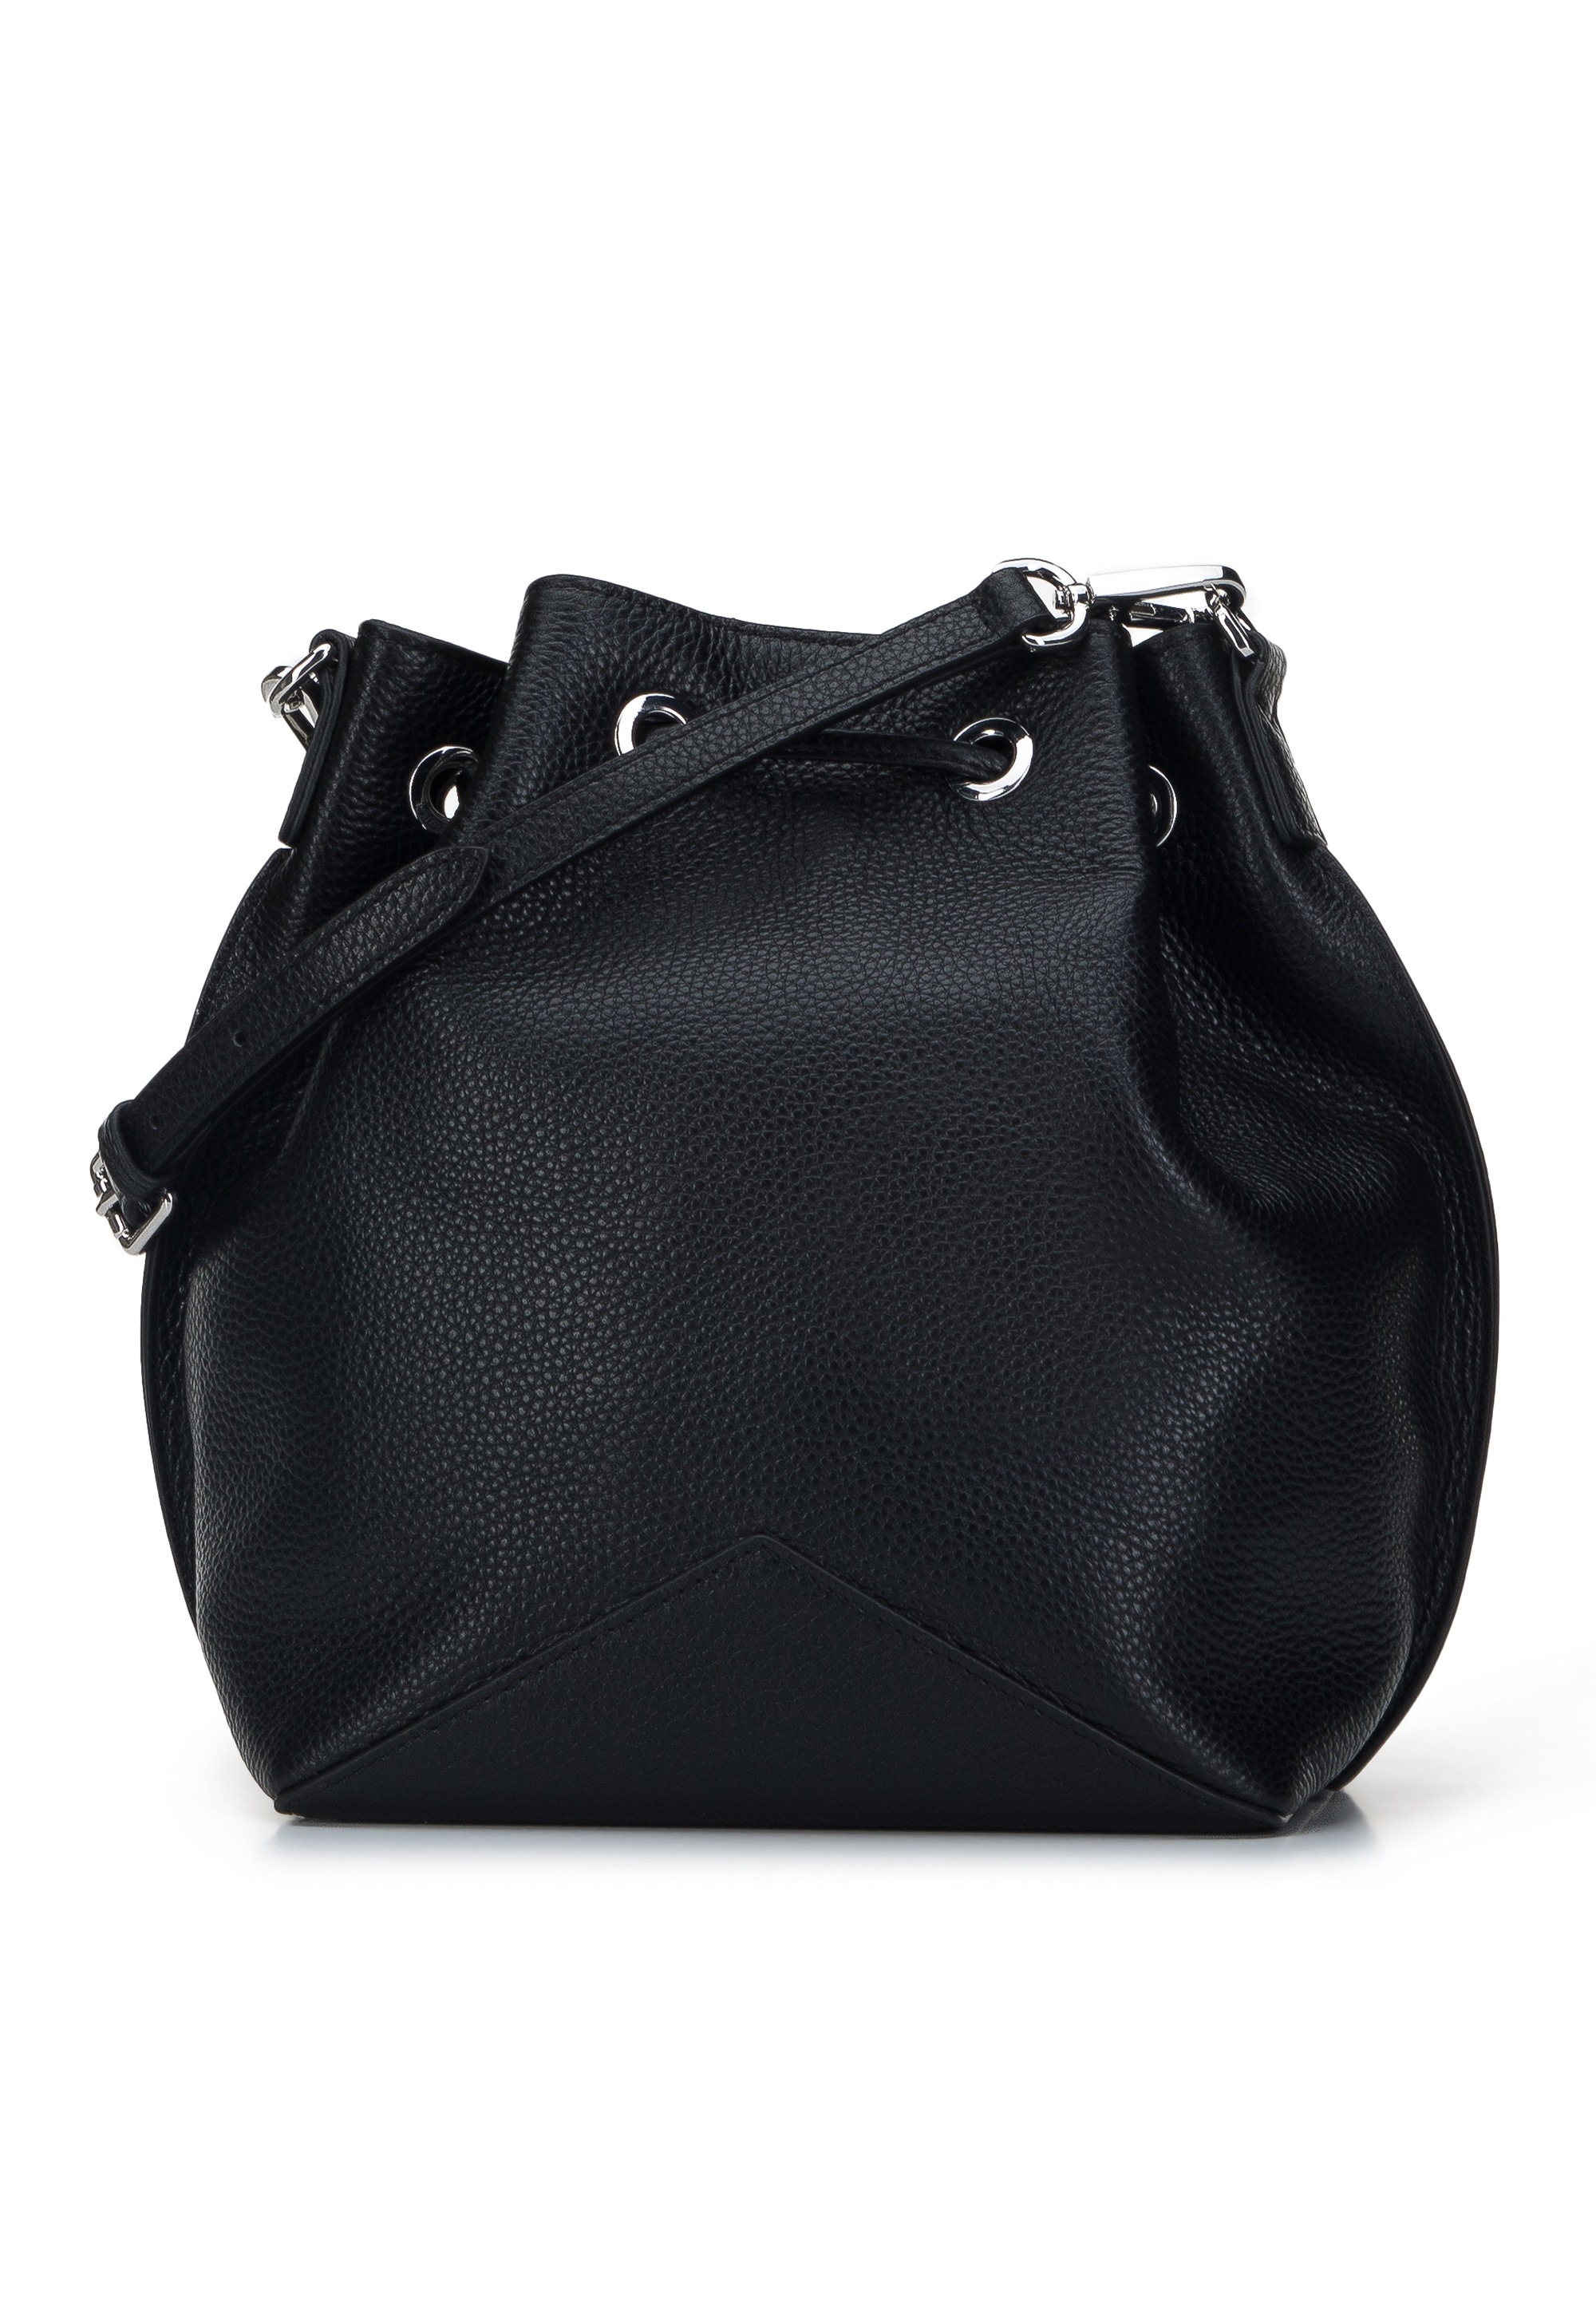 WITTCHEN Handtasche »Elegance«, horizontal, für die Arbeit, urban, vertikal